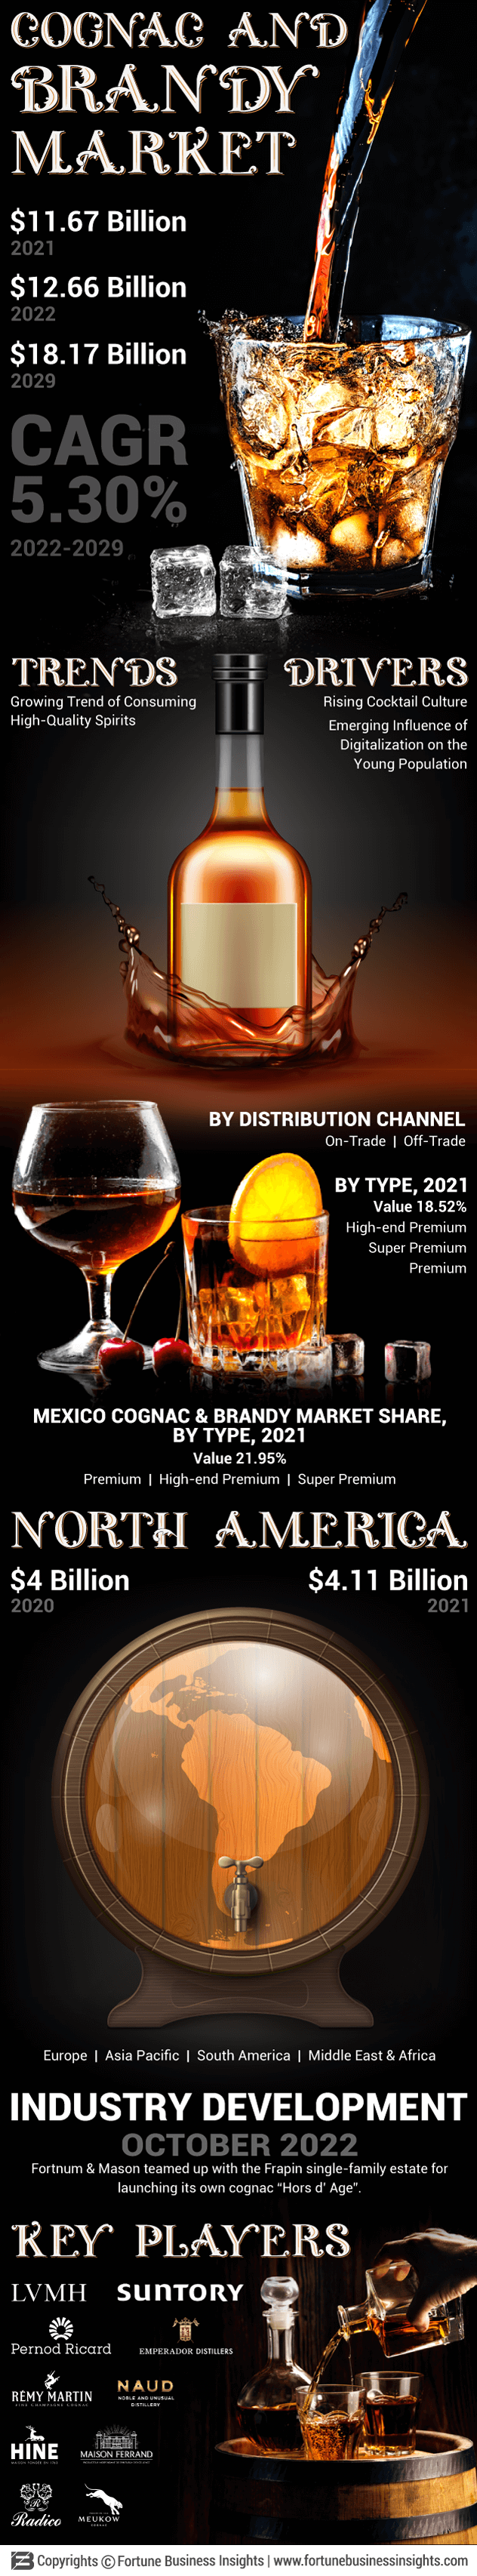 Cognac & Brandy Market